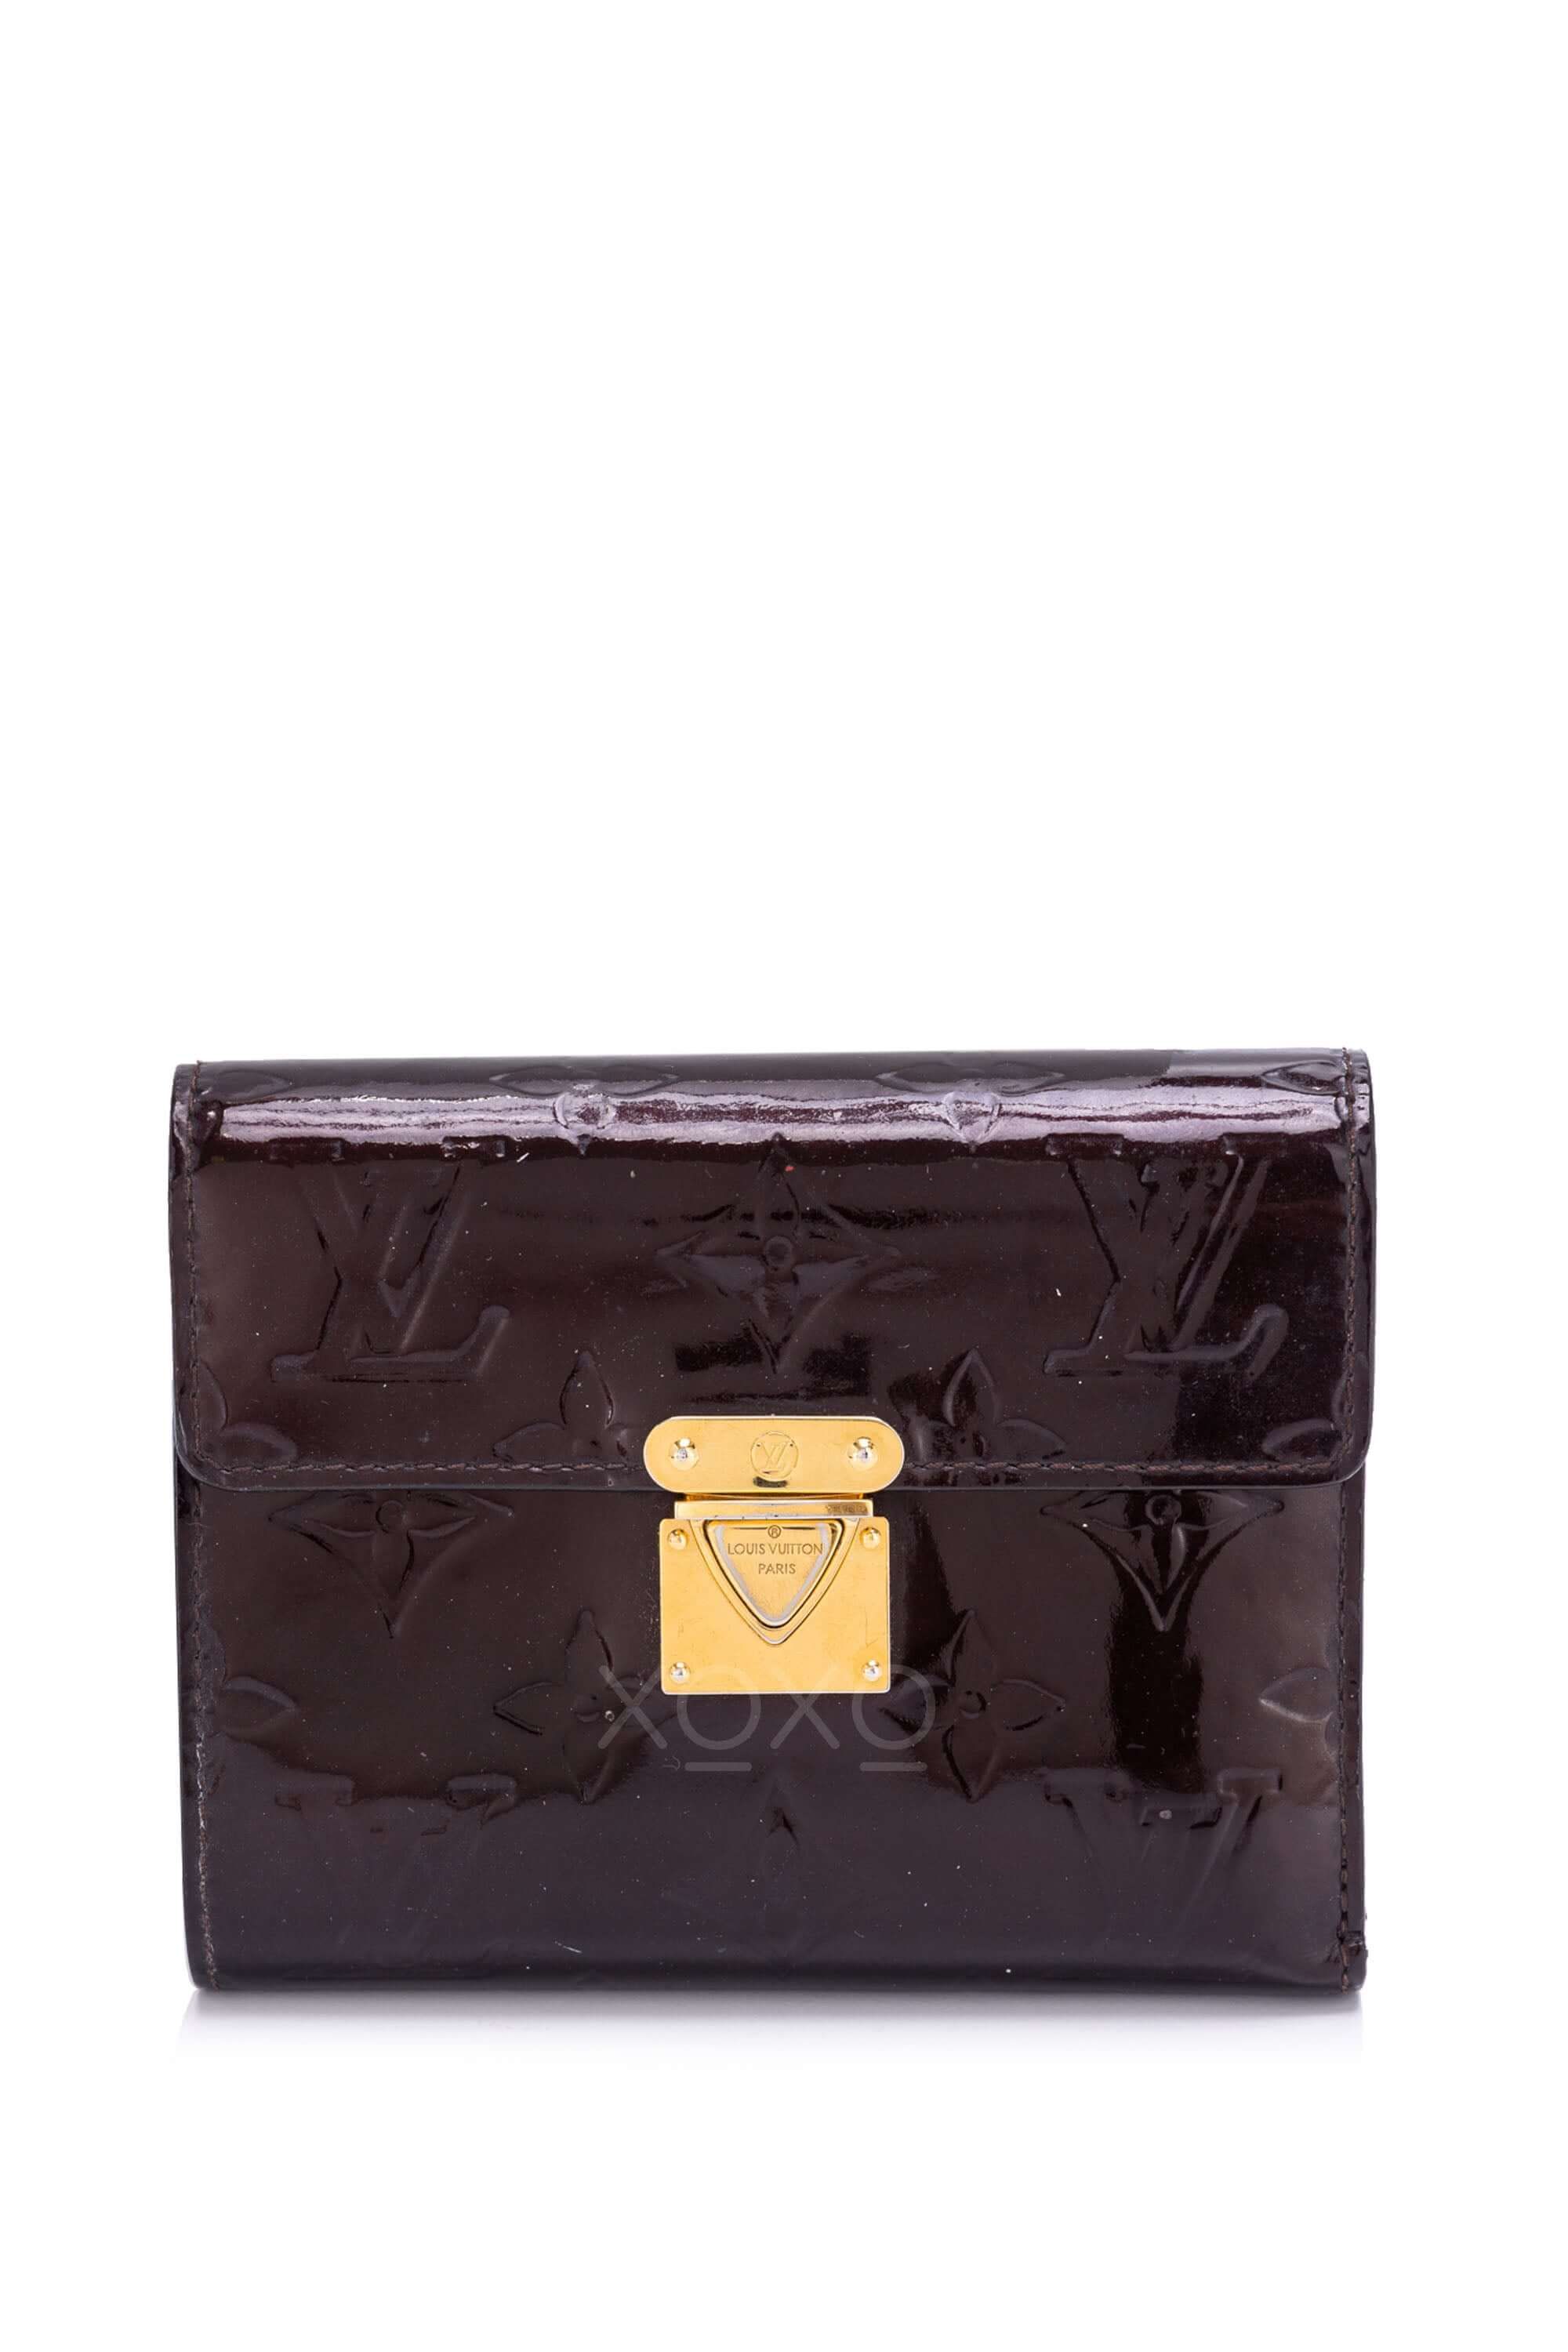 PRELOVED Louis Vuitton Multicolor Koala Compact Wallet Noir